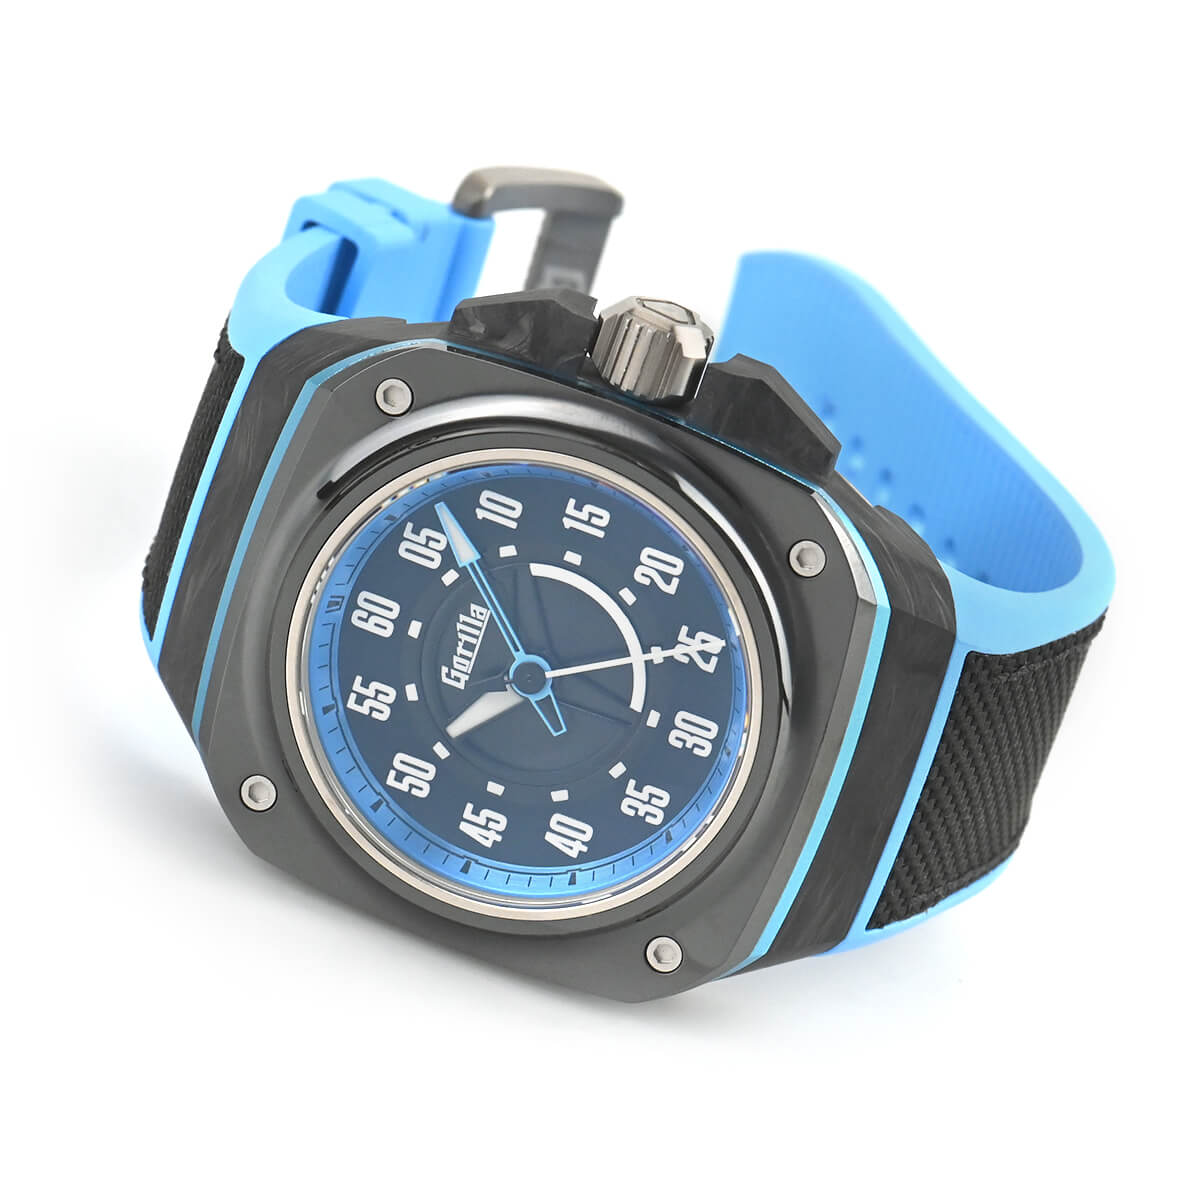 ゴリラ Gorilla ファストバック ギャラクシー ブルー FASTBACK GALAXY BLUE(FBY11.1) 中古 未使用品 メンズ 腕時計